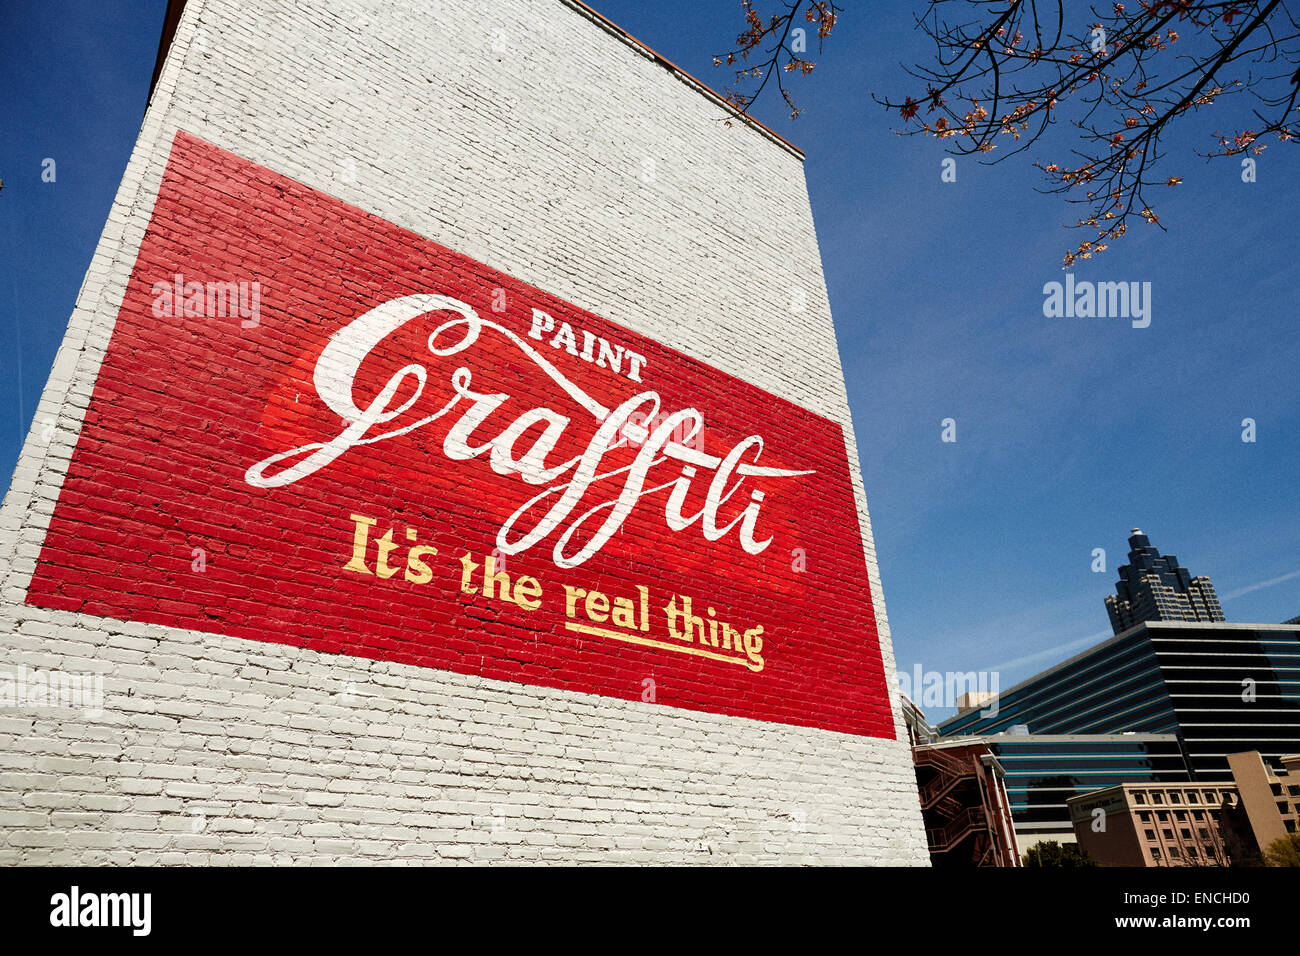 Die Innenstadt von Atlanta in Georga USA Bild: Coka Cola Anzeige Farbe auf einer Gabel Stirnwand zu genießen, es ist das einzig wahre, um Farbe zu ändern Stockfoto